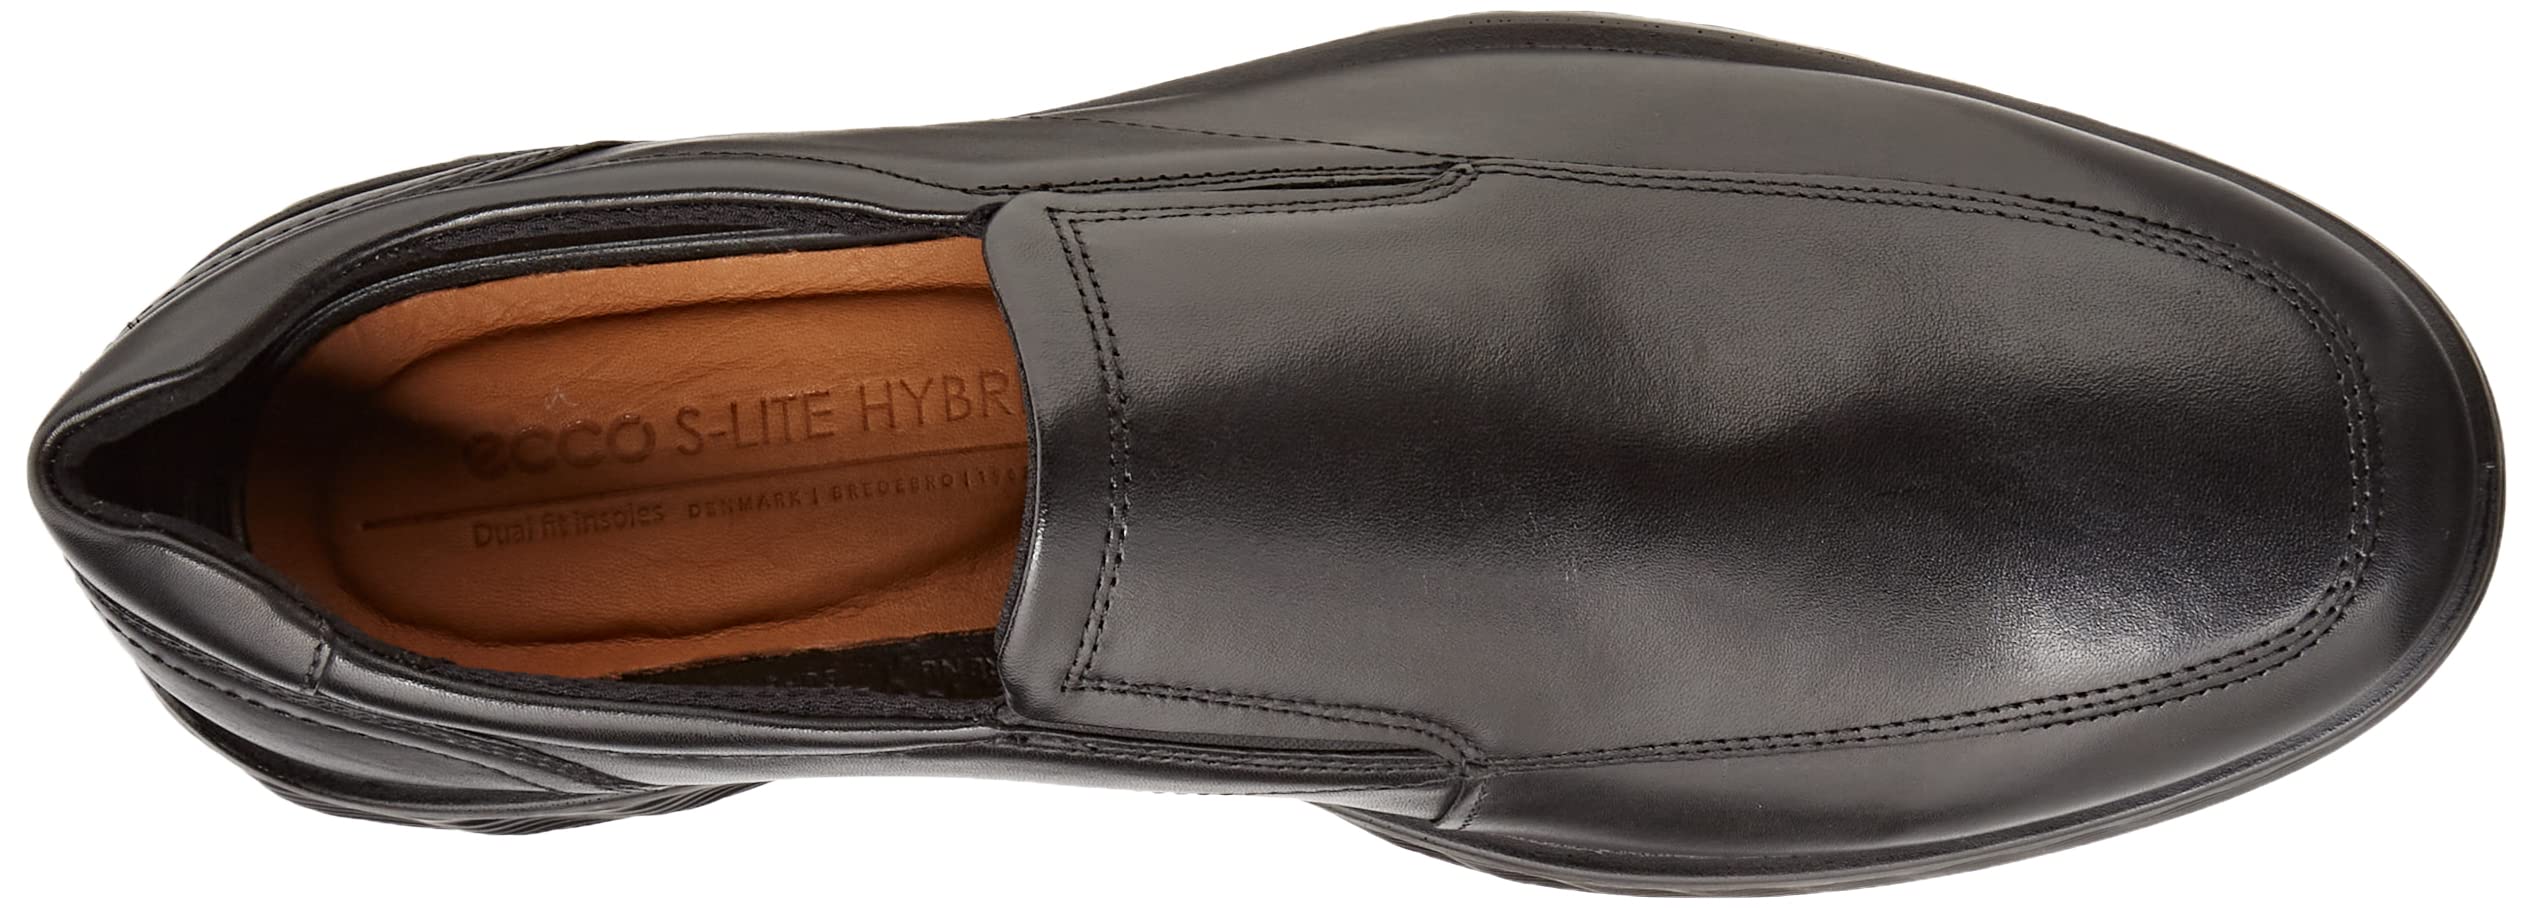 ECCO Men's S Lite Hybrid Apron Toe Slip on Loafer